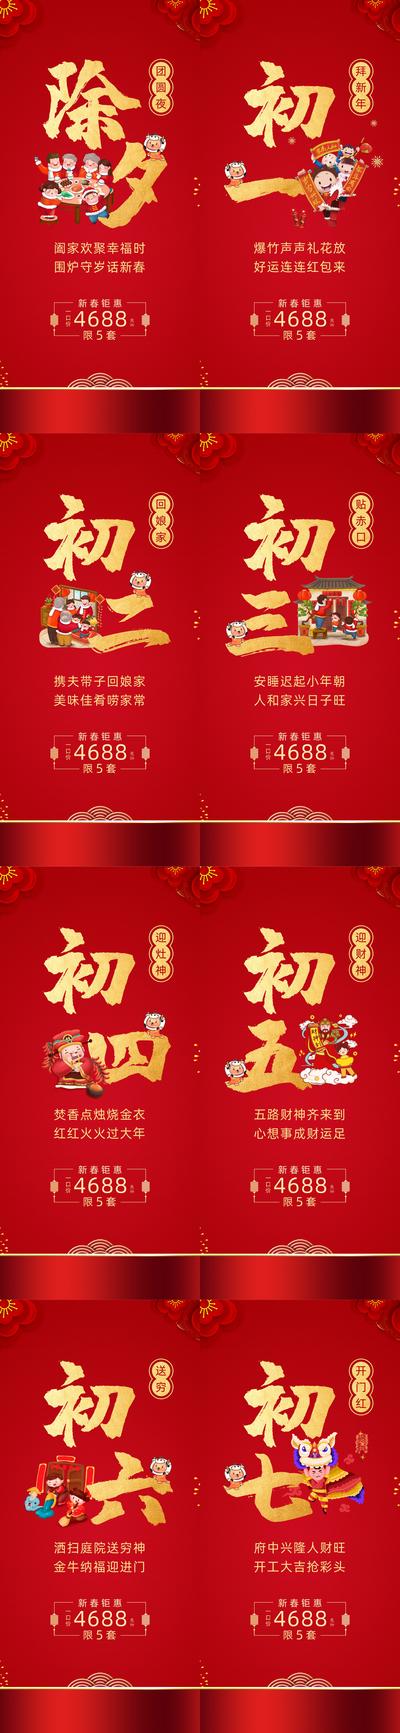 南门网 广告 海报 节日 初一 红金 新年 春节 新春 初七